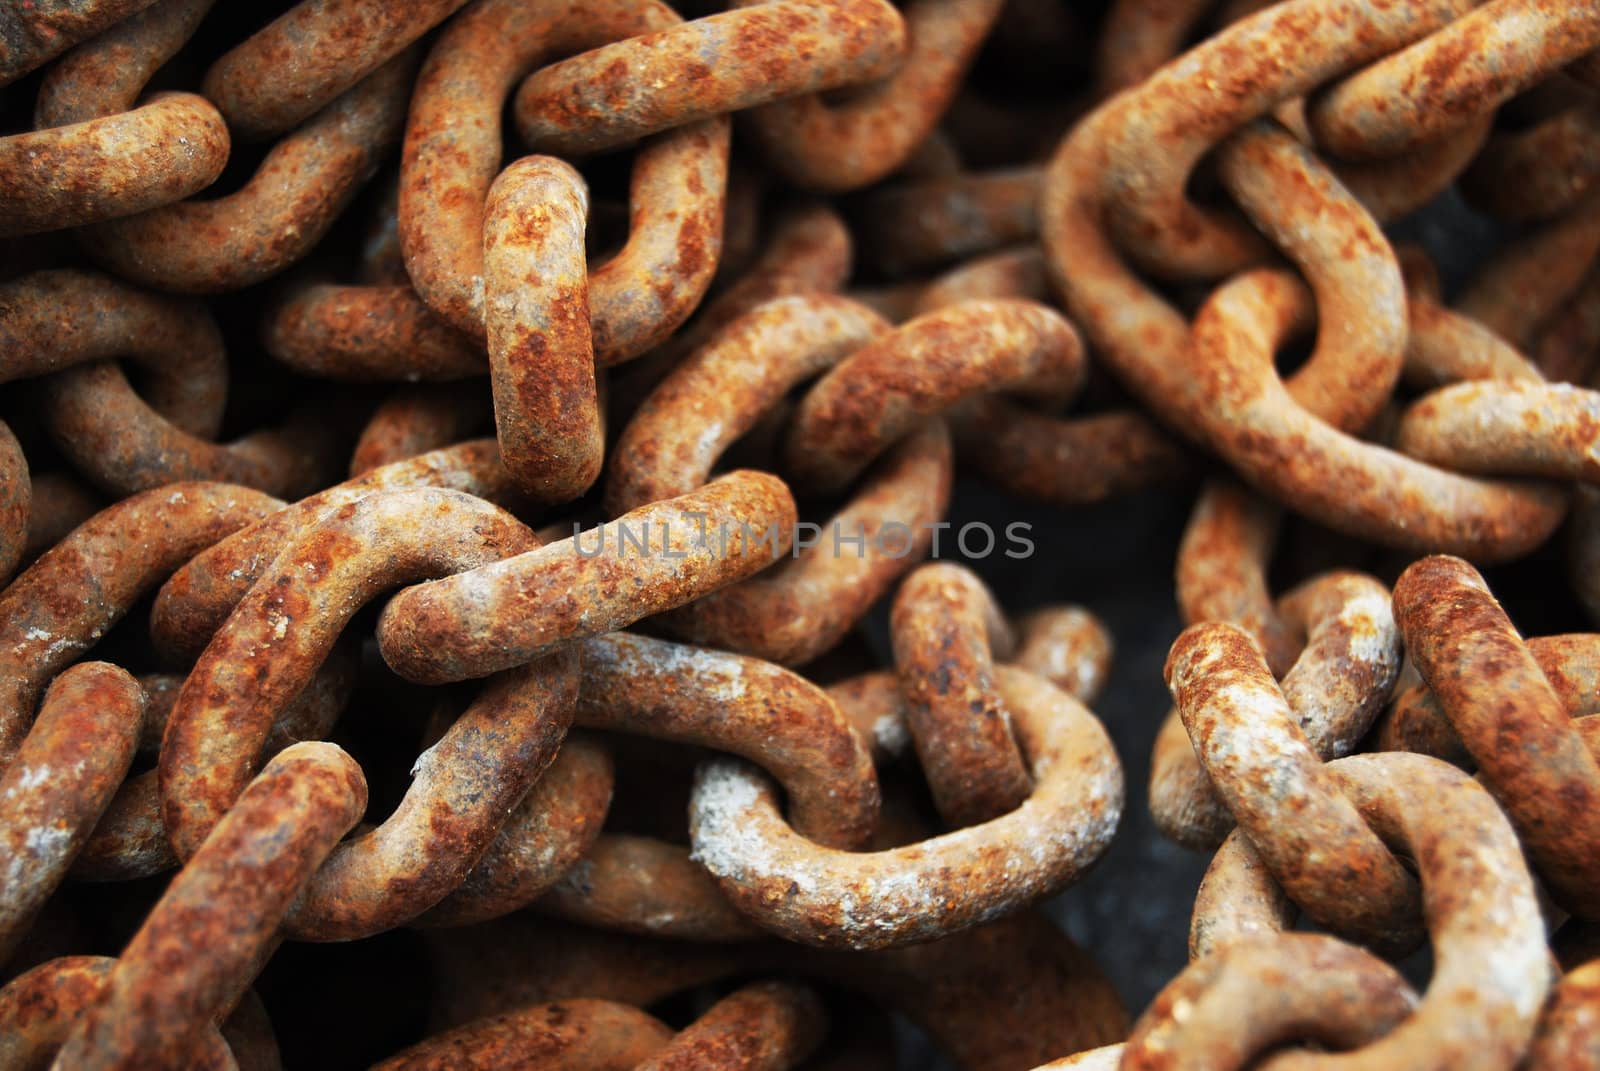 Rusty chains by Jule_Berlin